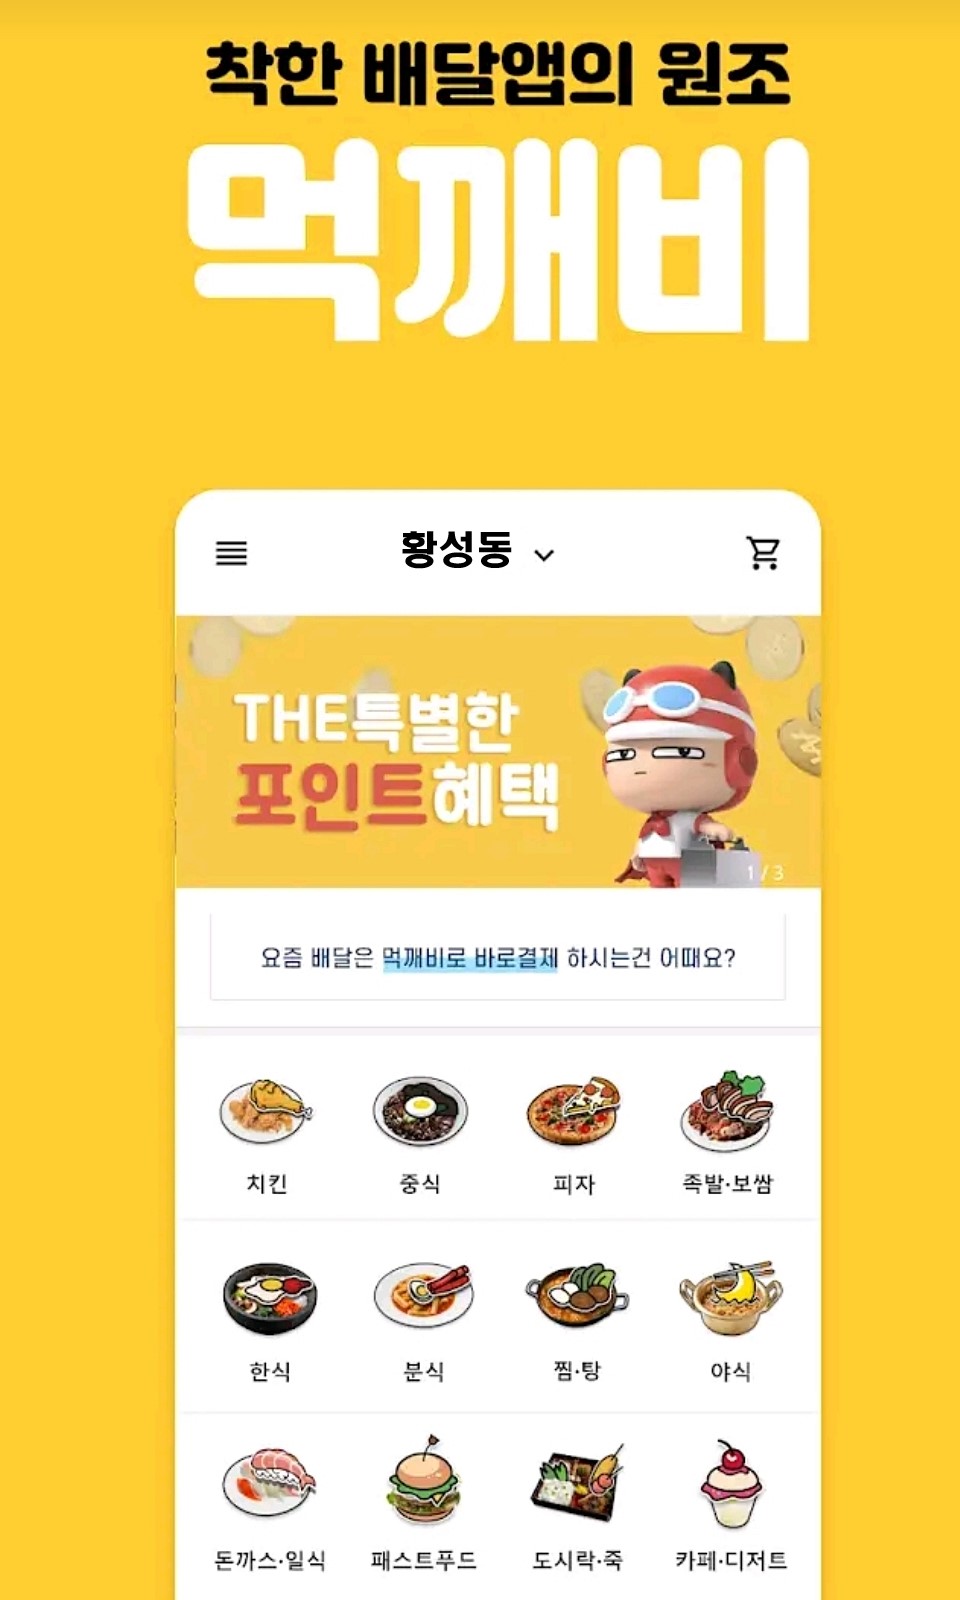 경북 공공배달앱 ‘먹깨비’ 앱 스토어 사진 일부 발췌